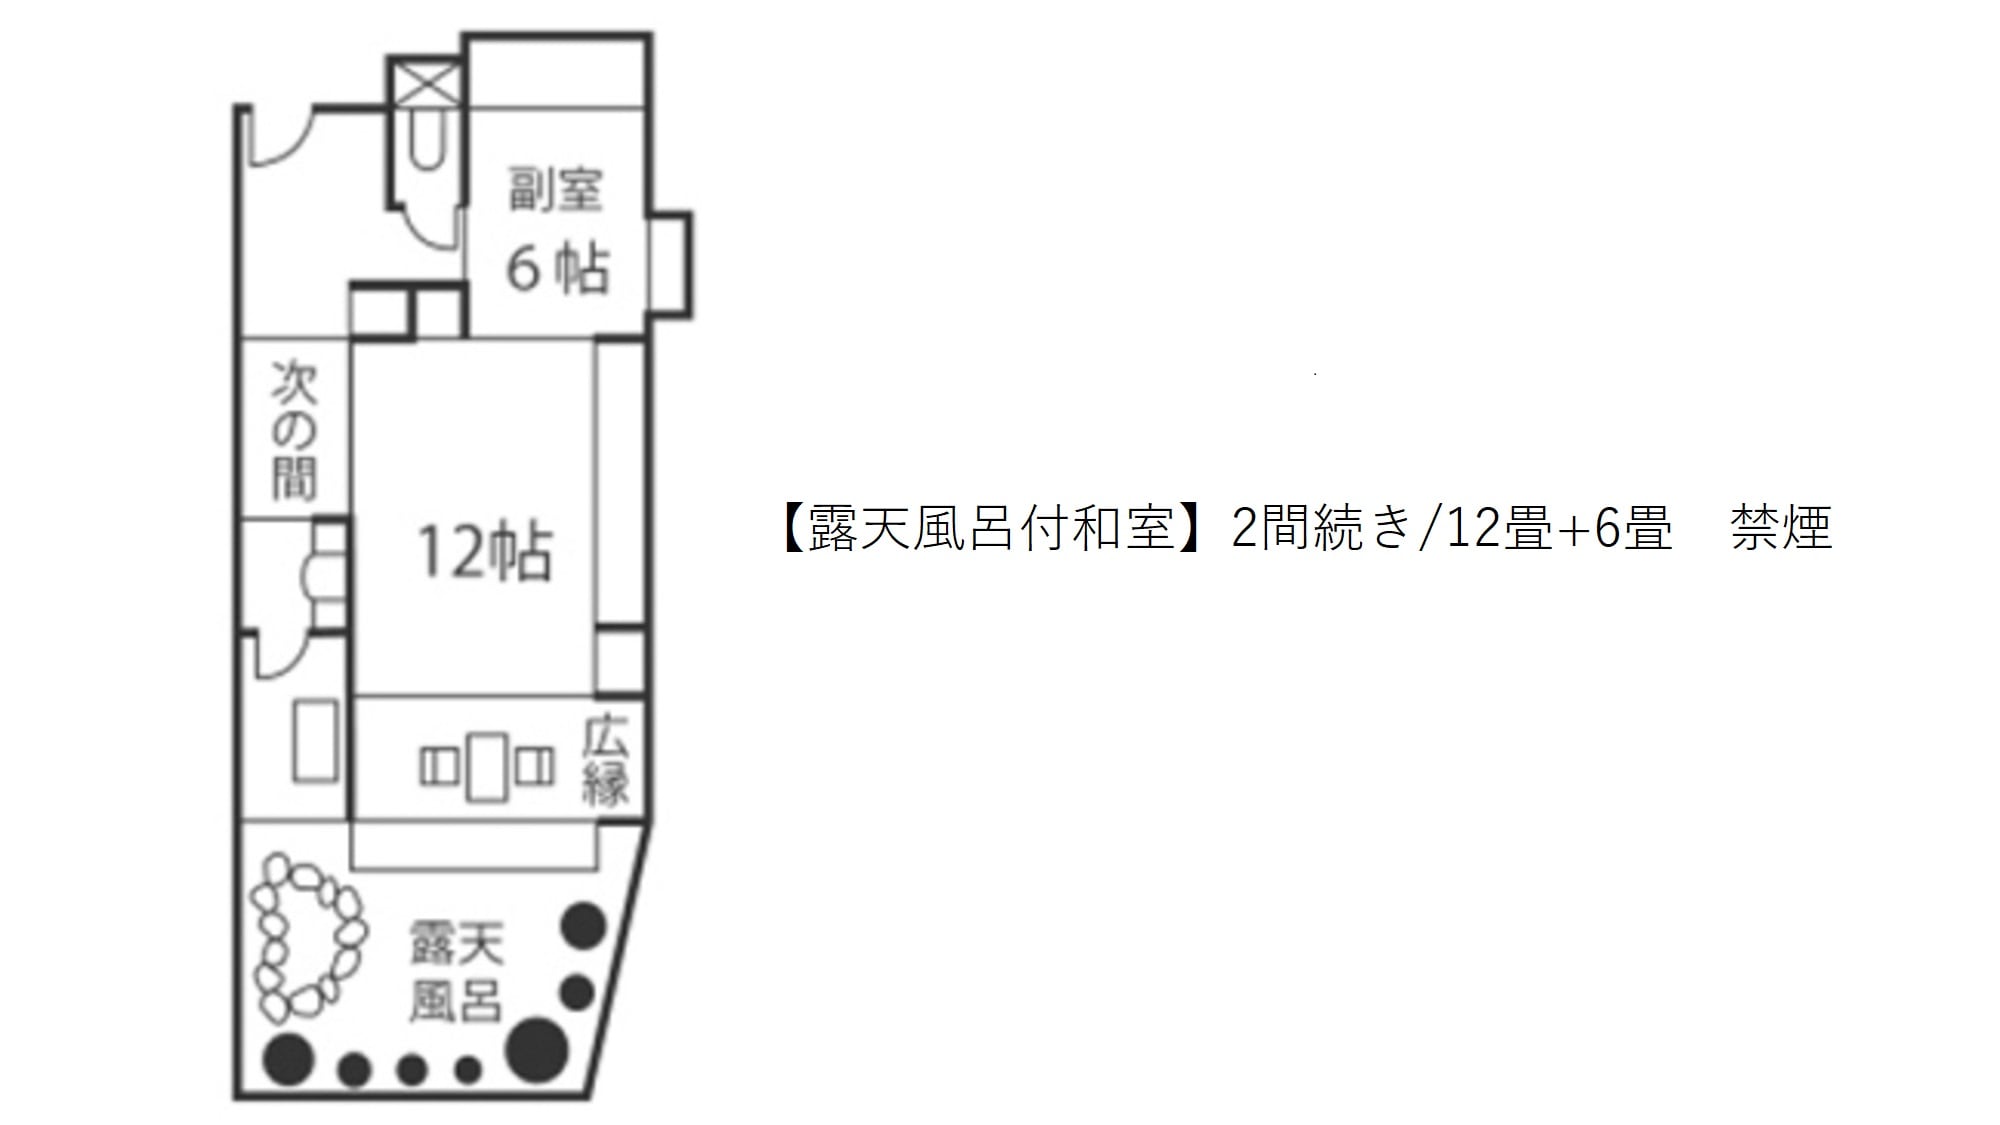 [ห้องสไตล์ญี่ปุ่นพร้อมห้องอาบน้ำแบบเปิดโล่ง] 2 ห้องต่อเนื่อง / 12 เสื่อทาทามิ + 6 เสื่อทาทามิ ห้องปลอดบุหรี่